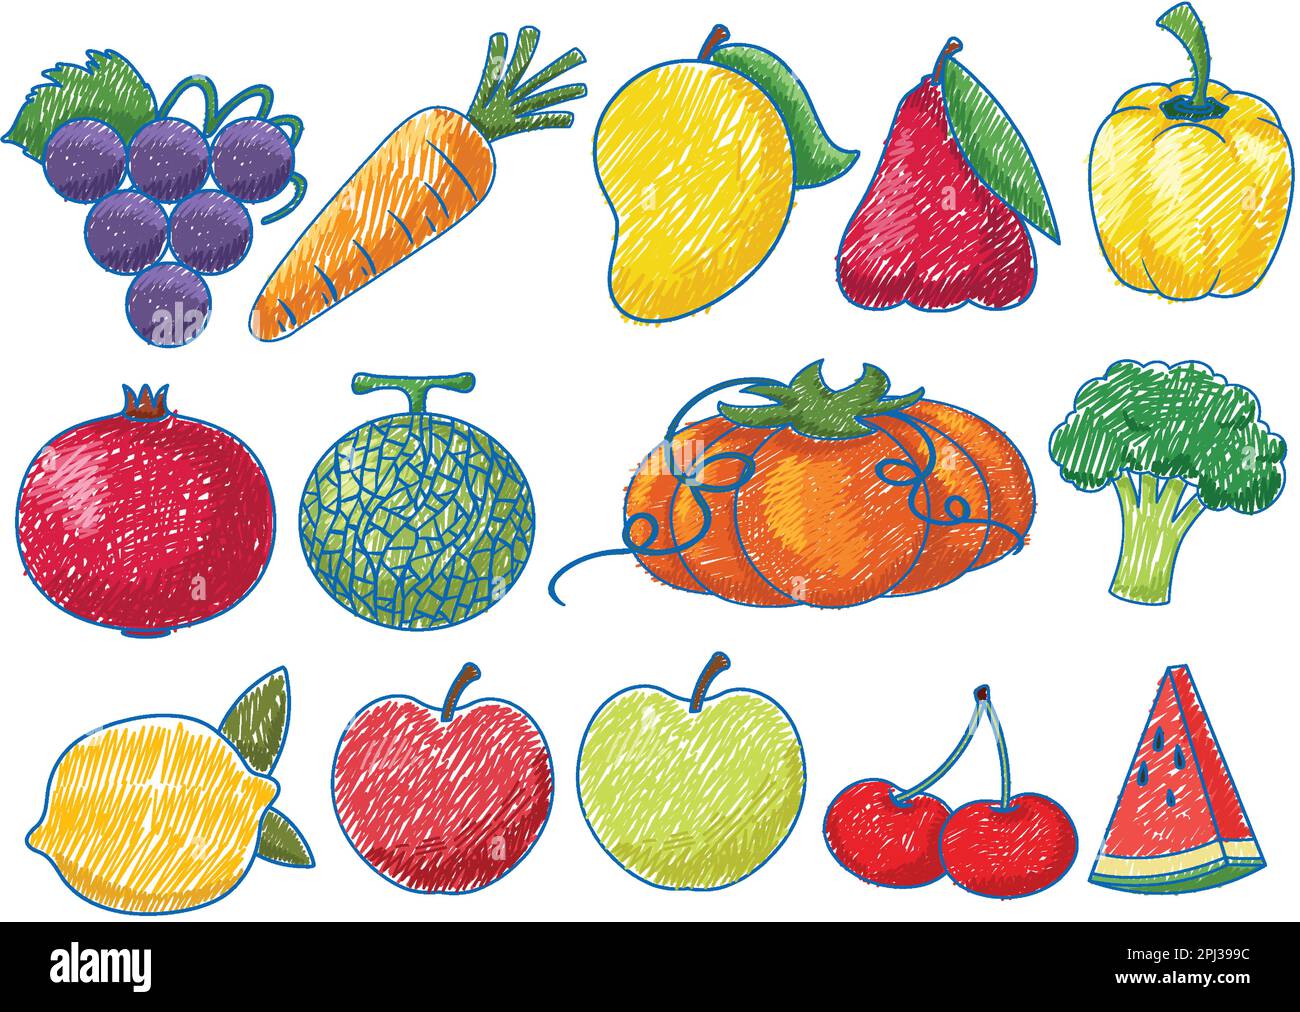 Simple Vegetable Drawings for Kids | Vegetable drawing, Drawings, Kids